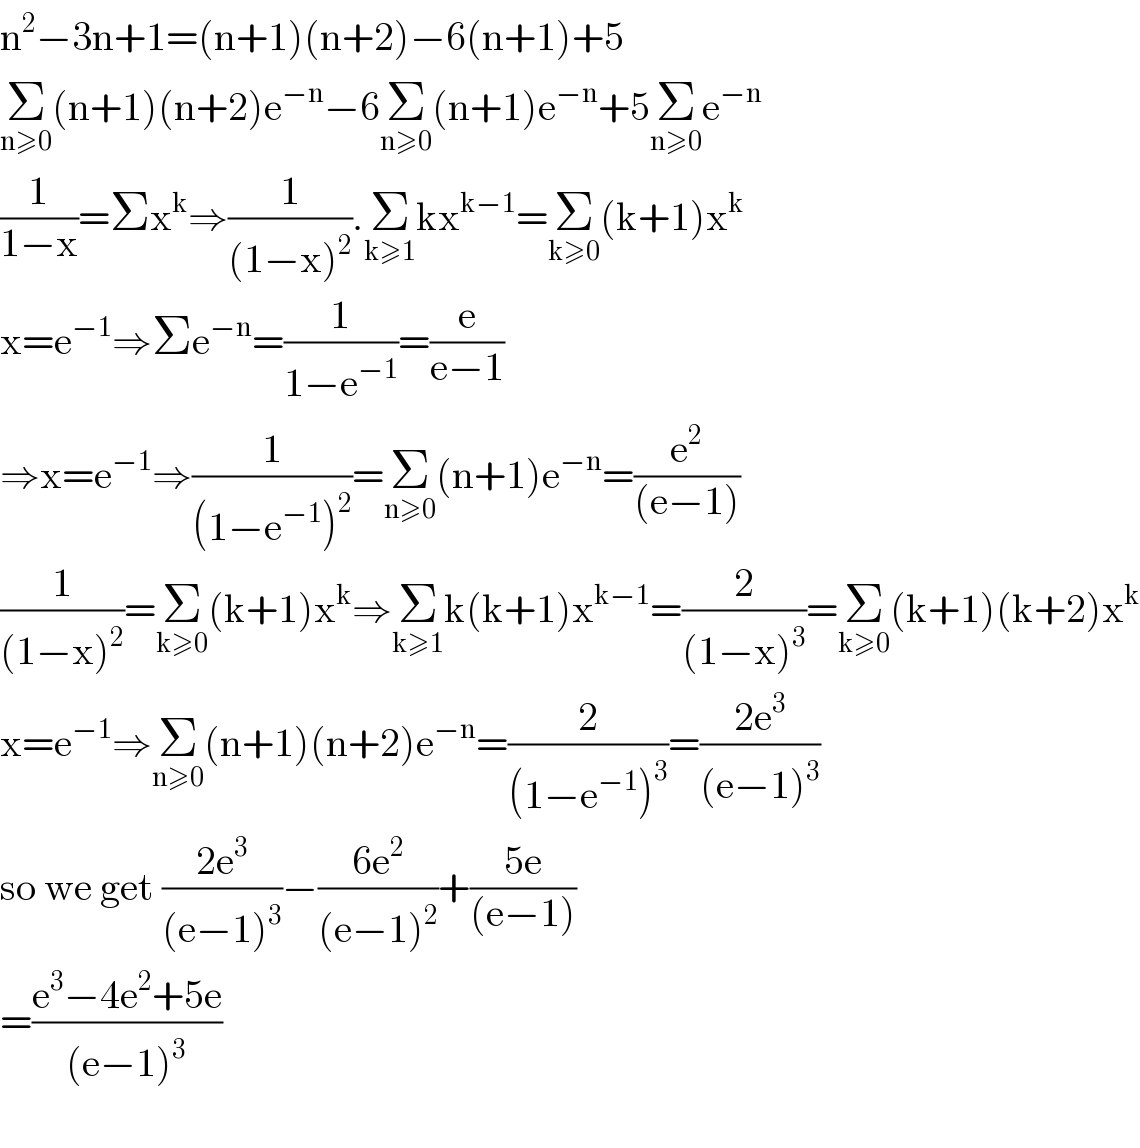 n^2 −3n+1=(n+1)(n+2)−6(n+1)+5  Σ_(n≥0) (n+1)(n+2)e^(−n) −6Σ_(n≥0) (n+1)e^(−n) +5Σ_(n≥0) e^(−n)   (1/(1−x))=Σx^k ⇒(1/((1−x)^2 )).Σ_(k≥1) kx^(k−1) =Σ_(k≥0) (k+1)x^k   x=e^(−1) ⇒Σe^(−n) =(1/(1−e^(−1) ))=(e/(e−1))  ⇒x=e^(−1) ⇒(1/((1−e^(−1) )^2 ))=Σ_(n≥0) (n+1)e^(−n) =(e^2 /((e−1)))  (1/((1−x)^2 ))=Σ_(k≥0) (k+1)x^k ⇒Σ_(k≥1) k(k+1)x^(k−1) =(2/((1−x)^3 ))=Σ_(k≥0) (k+1)(k+2)x^k   x=e^(−1) ⇒Σ_(n≥0) (n+1)(n+2)e^(−n) =(2/((1−e^(−1) )^3 ))=((2e^3 )/((e−1)^3 ))  so we get ((2e^3 )/((e−1)^3 ))−((6e^2 )/((e−1)^2 ))+((5e)/((e−1)))  =((e^3 −4e^2 +5e)/((e−1)^3 ))    